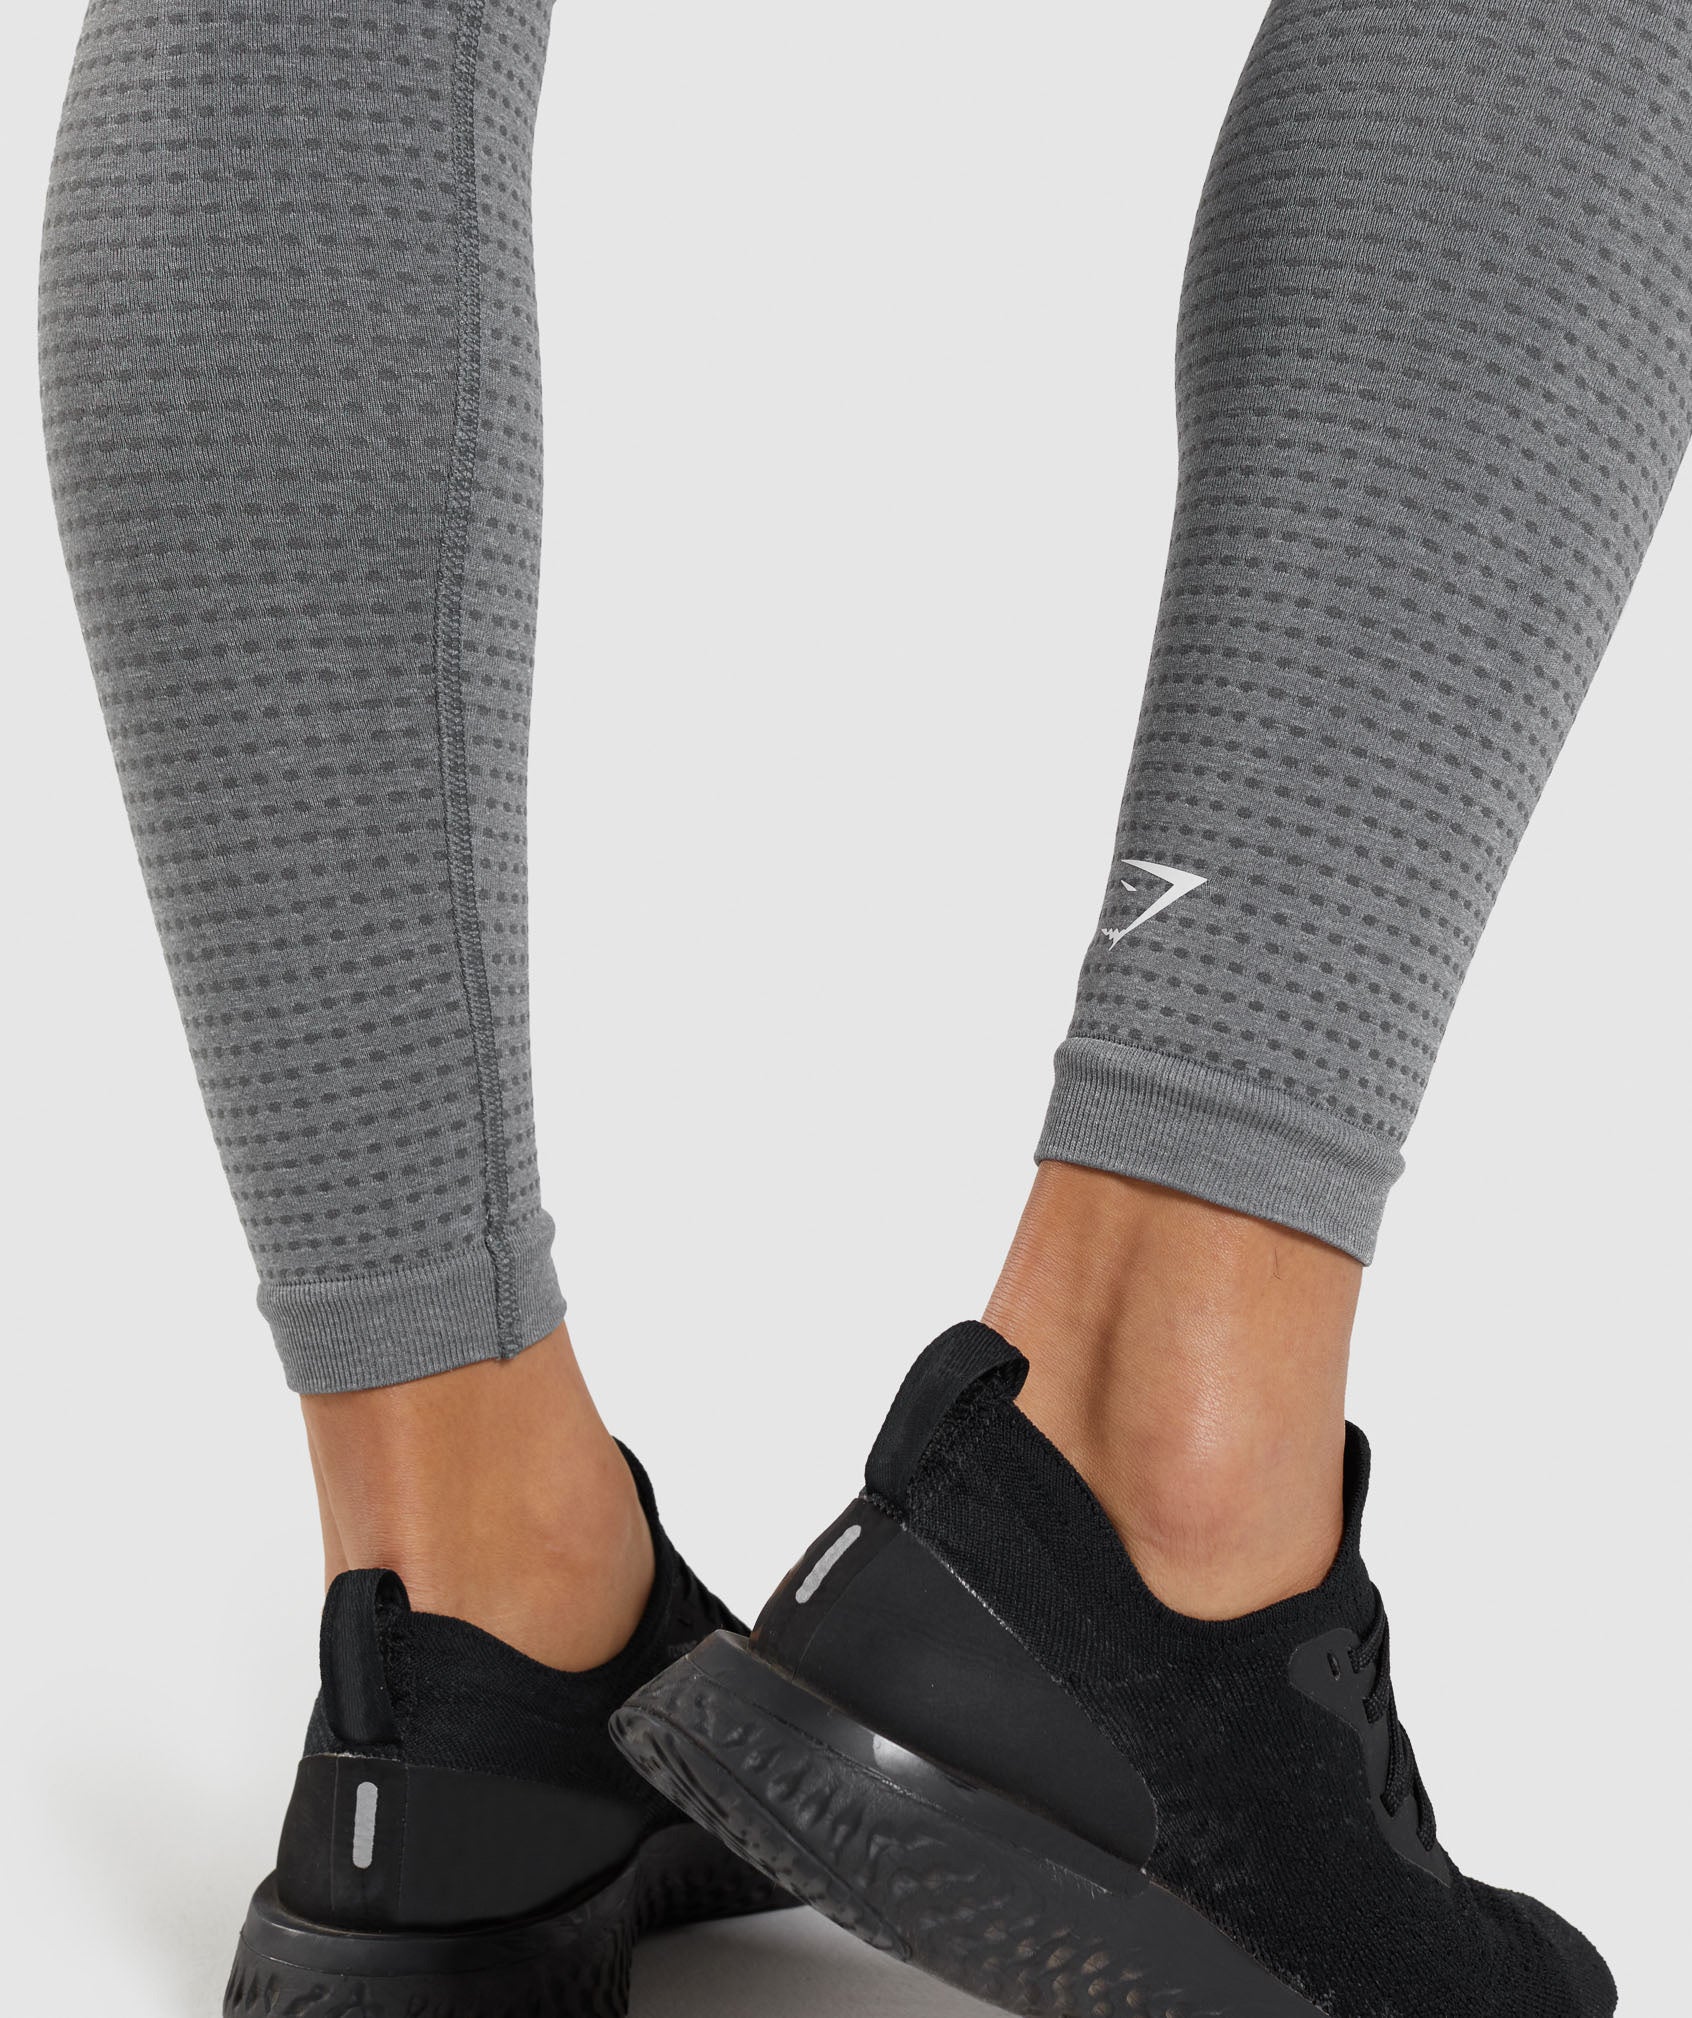 Sleek and Functional Dark Grey Gymshark Leggings with Pocket